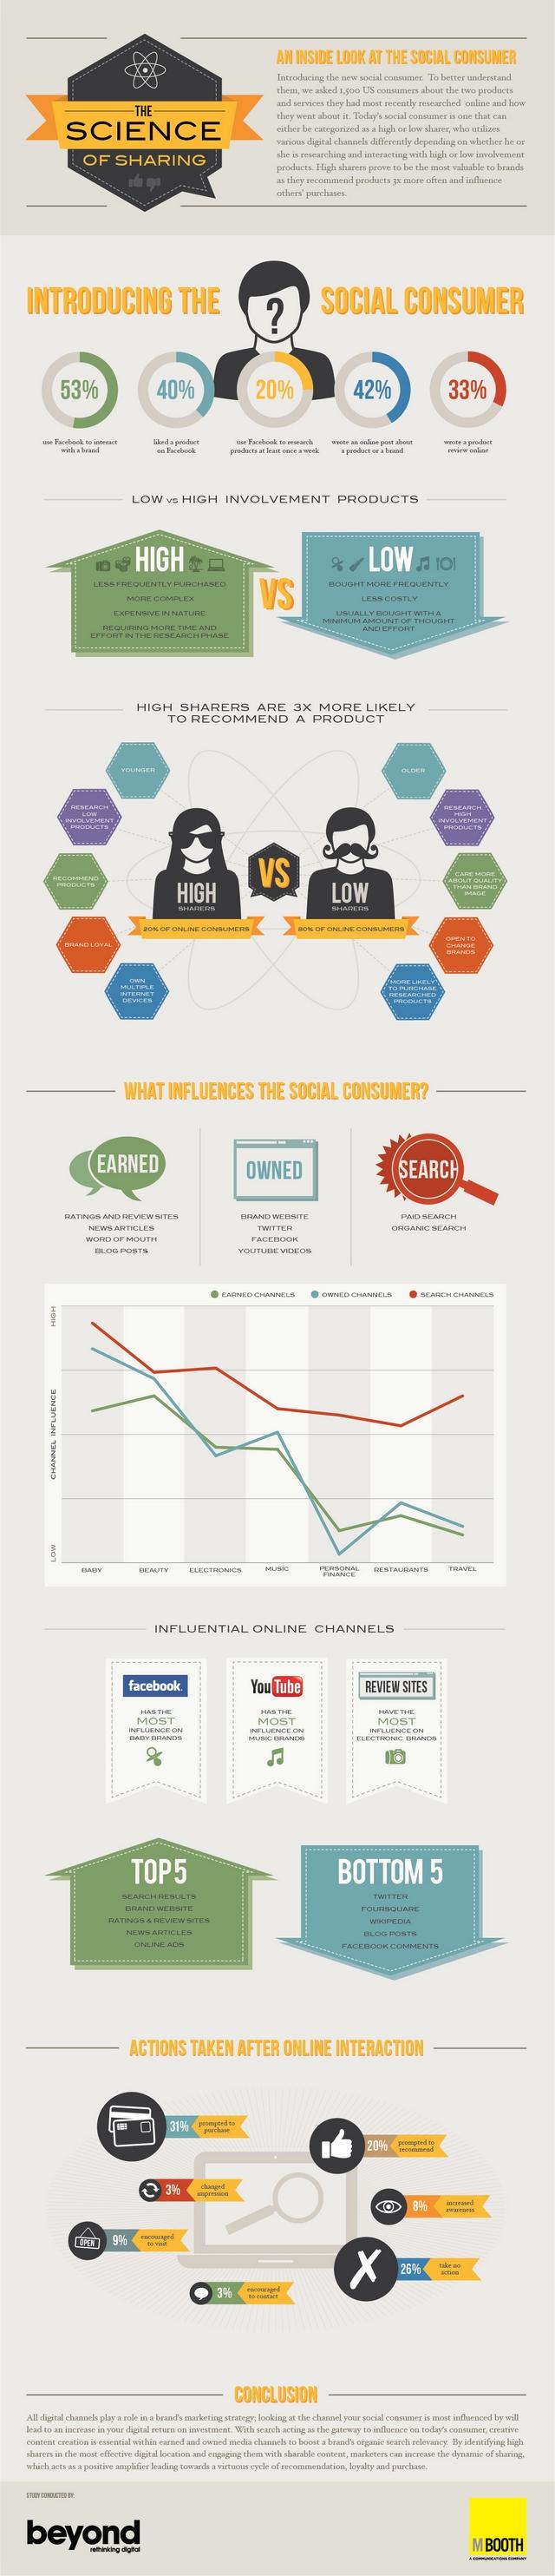 infographie partage consommateurs 2 Le partage social des consommateurs